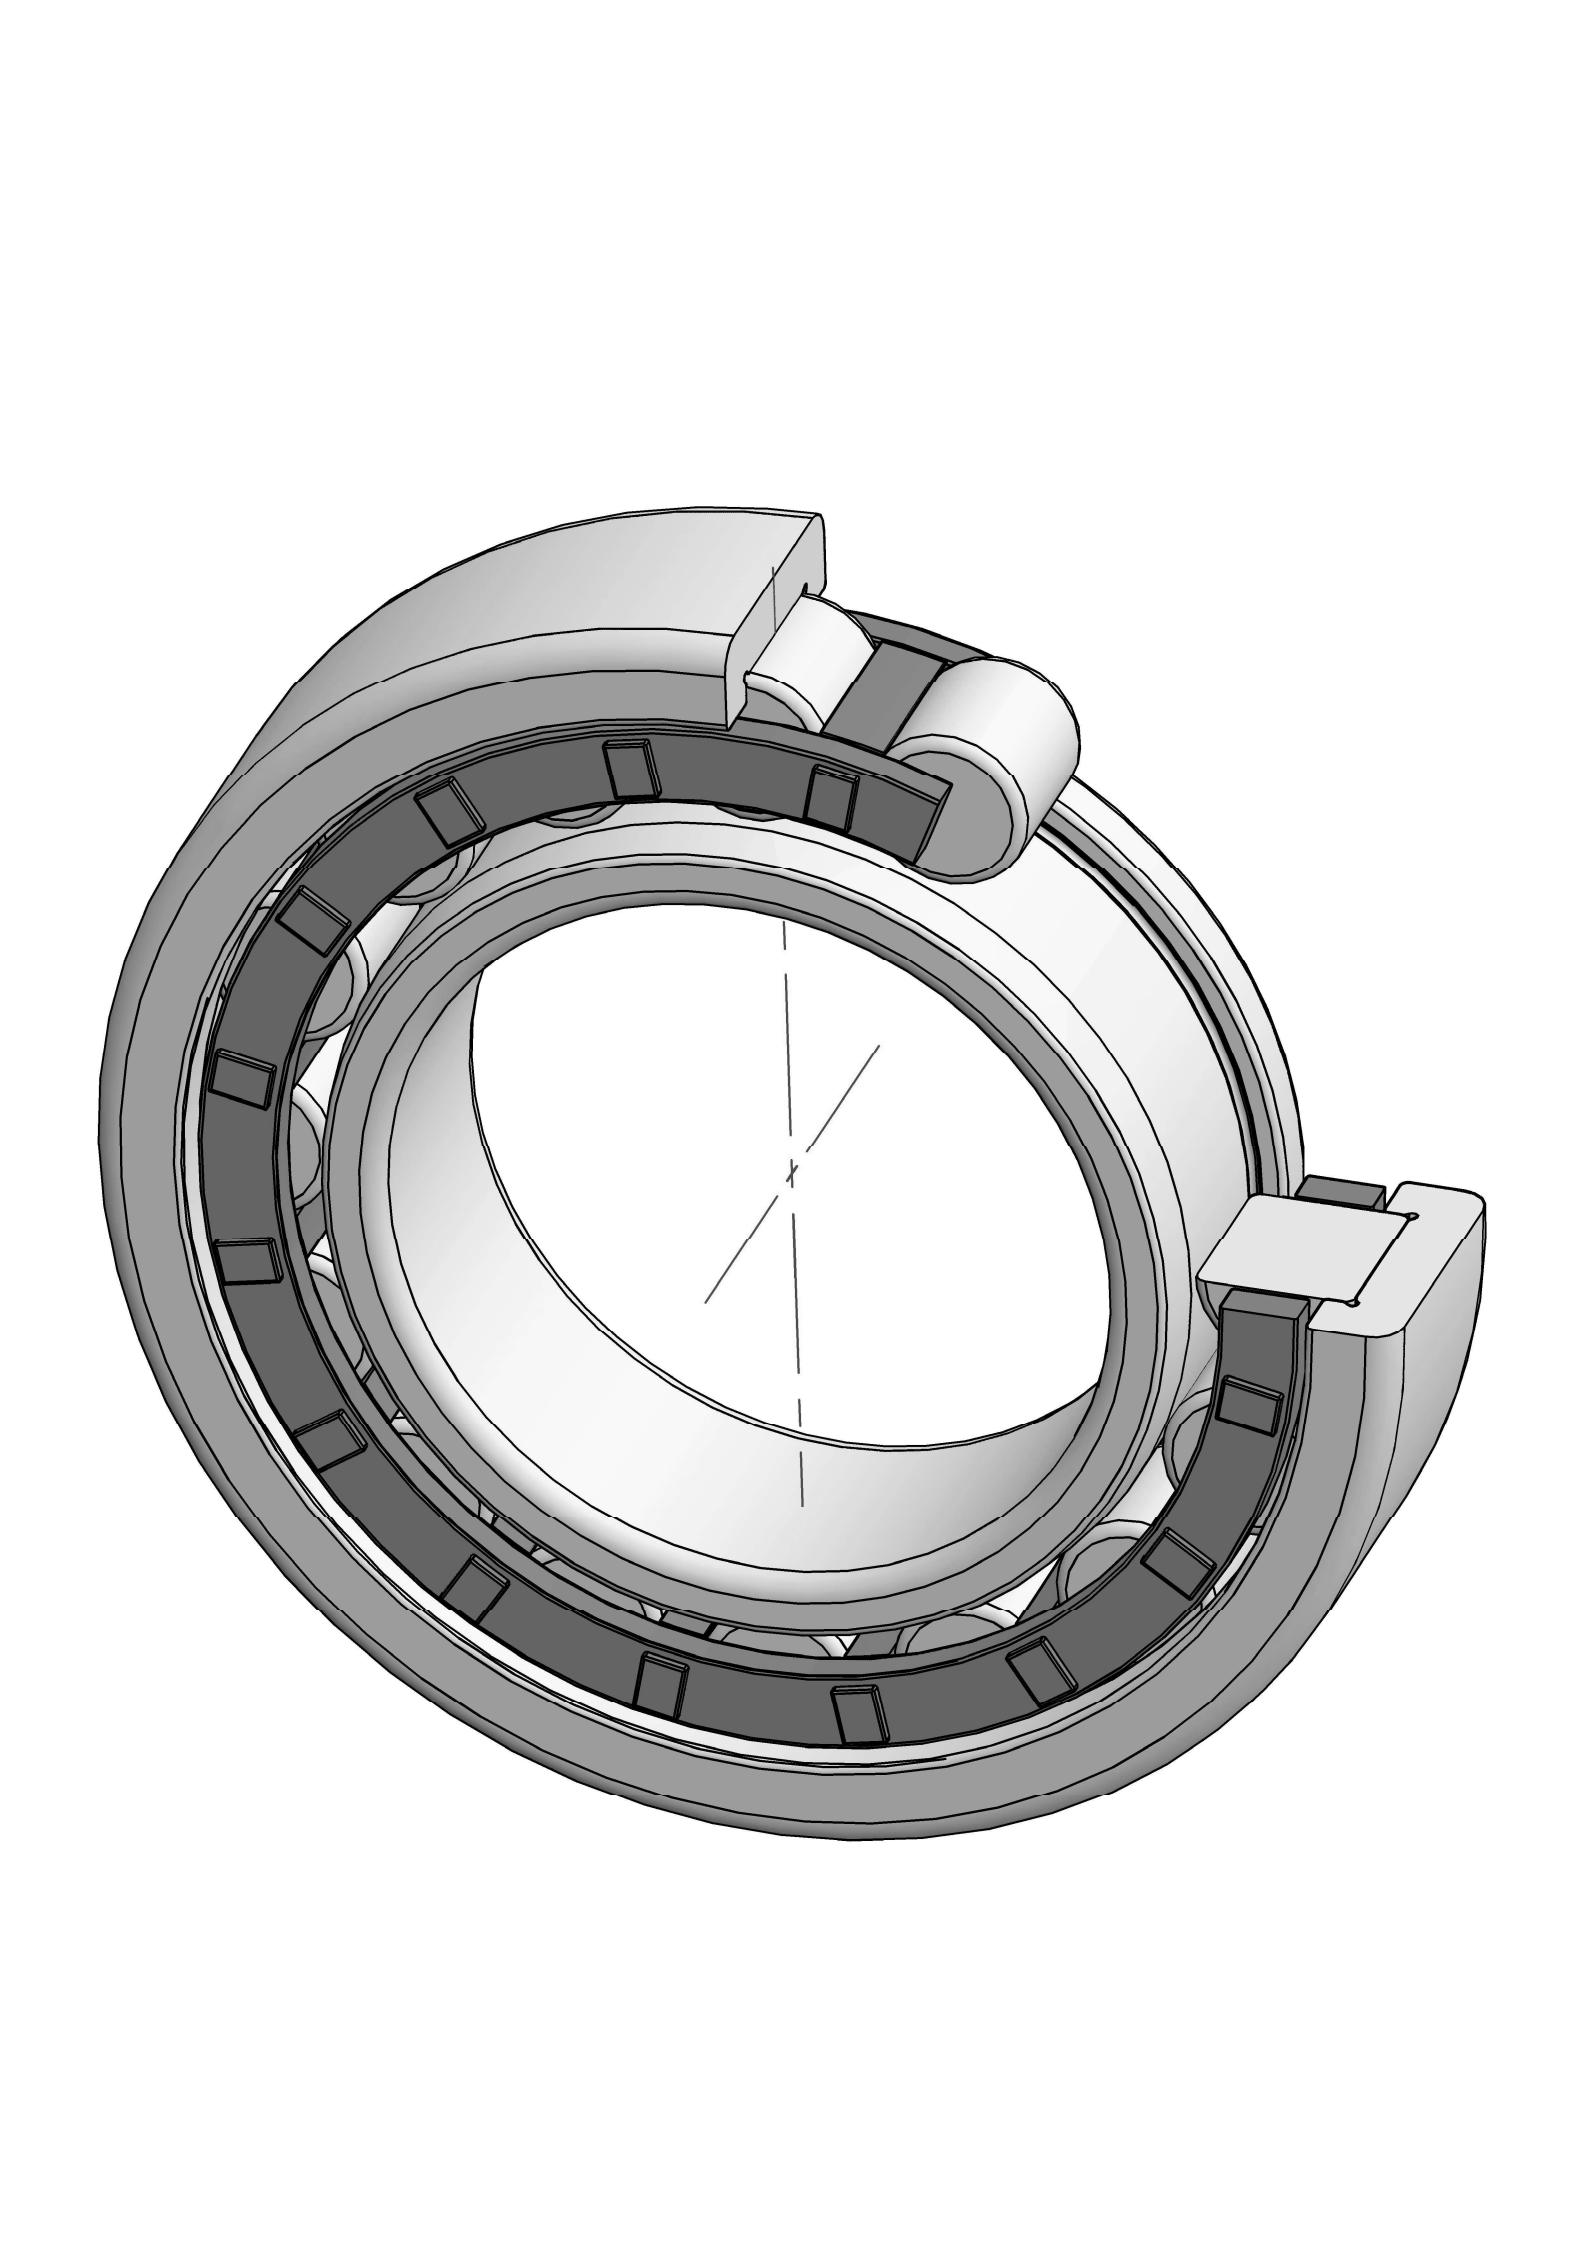 NJ336-EM otu ahịrị cylindrical roller bearing